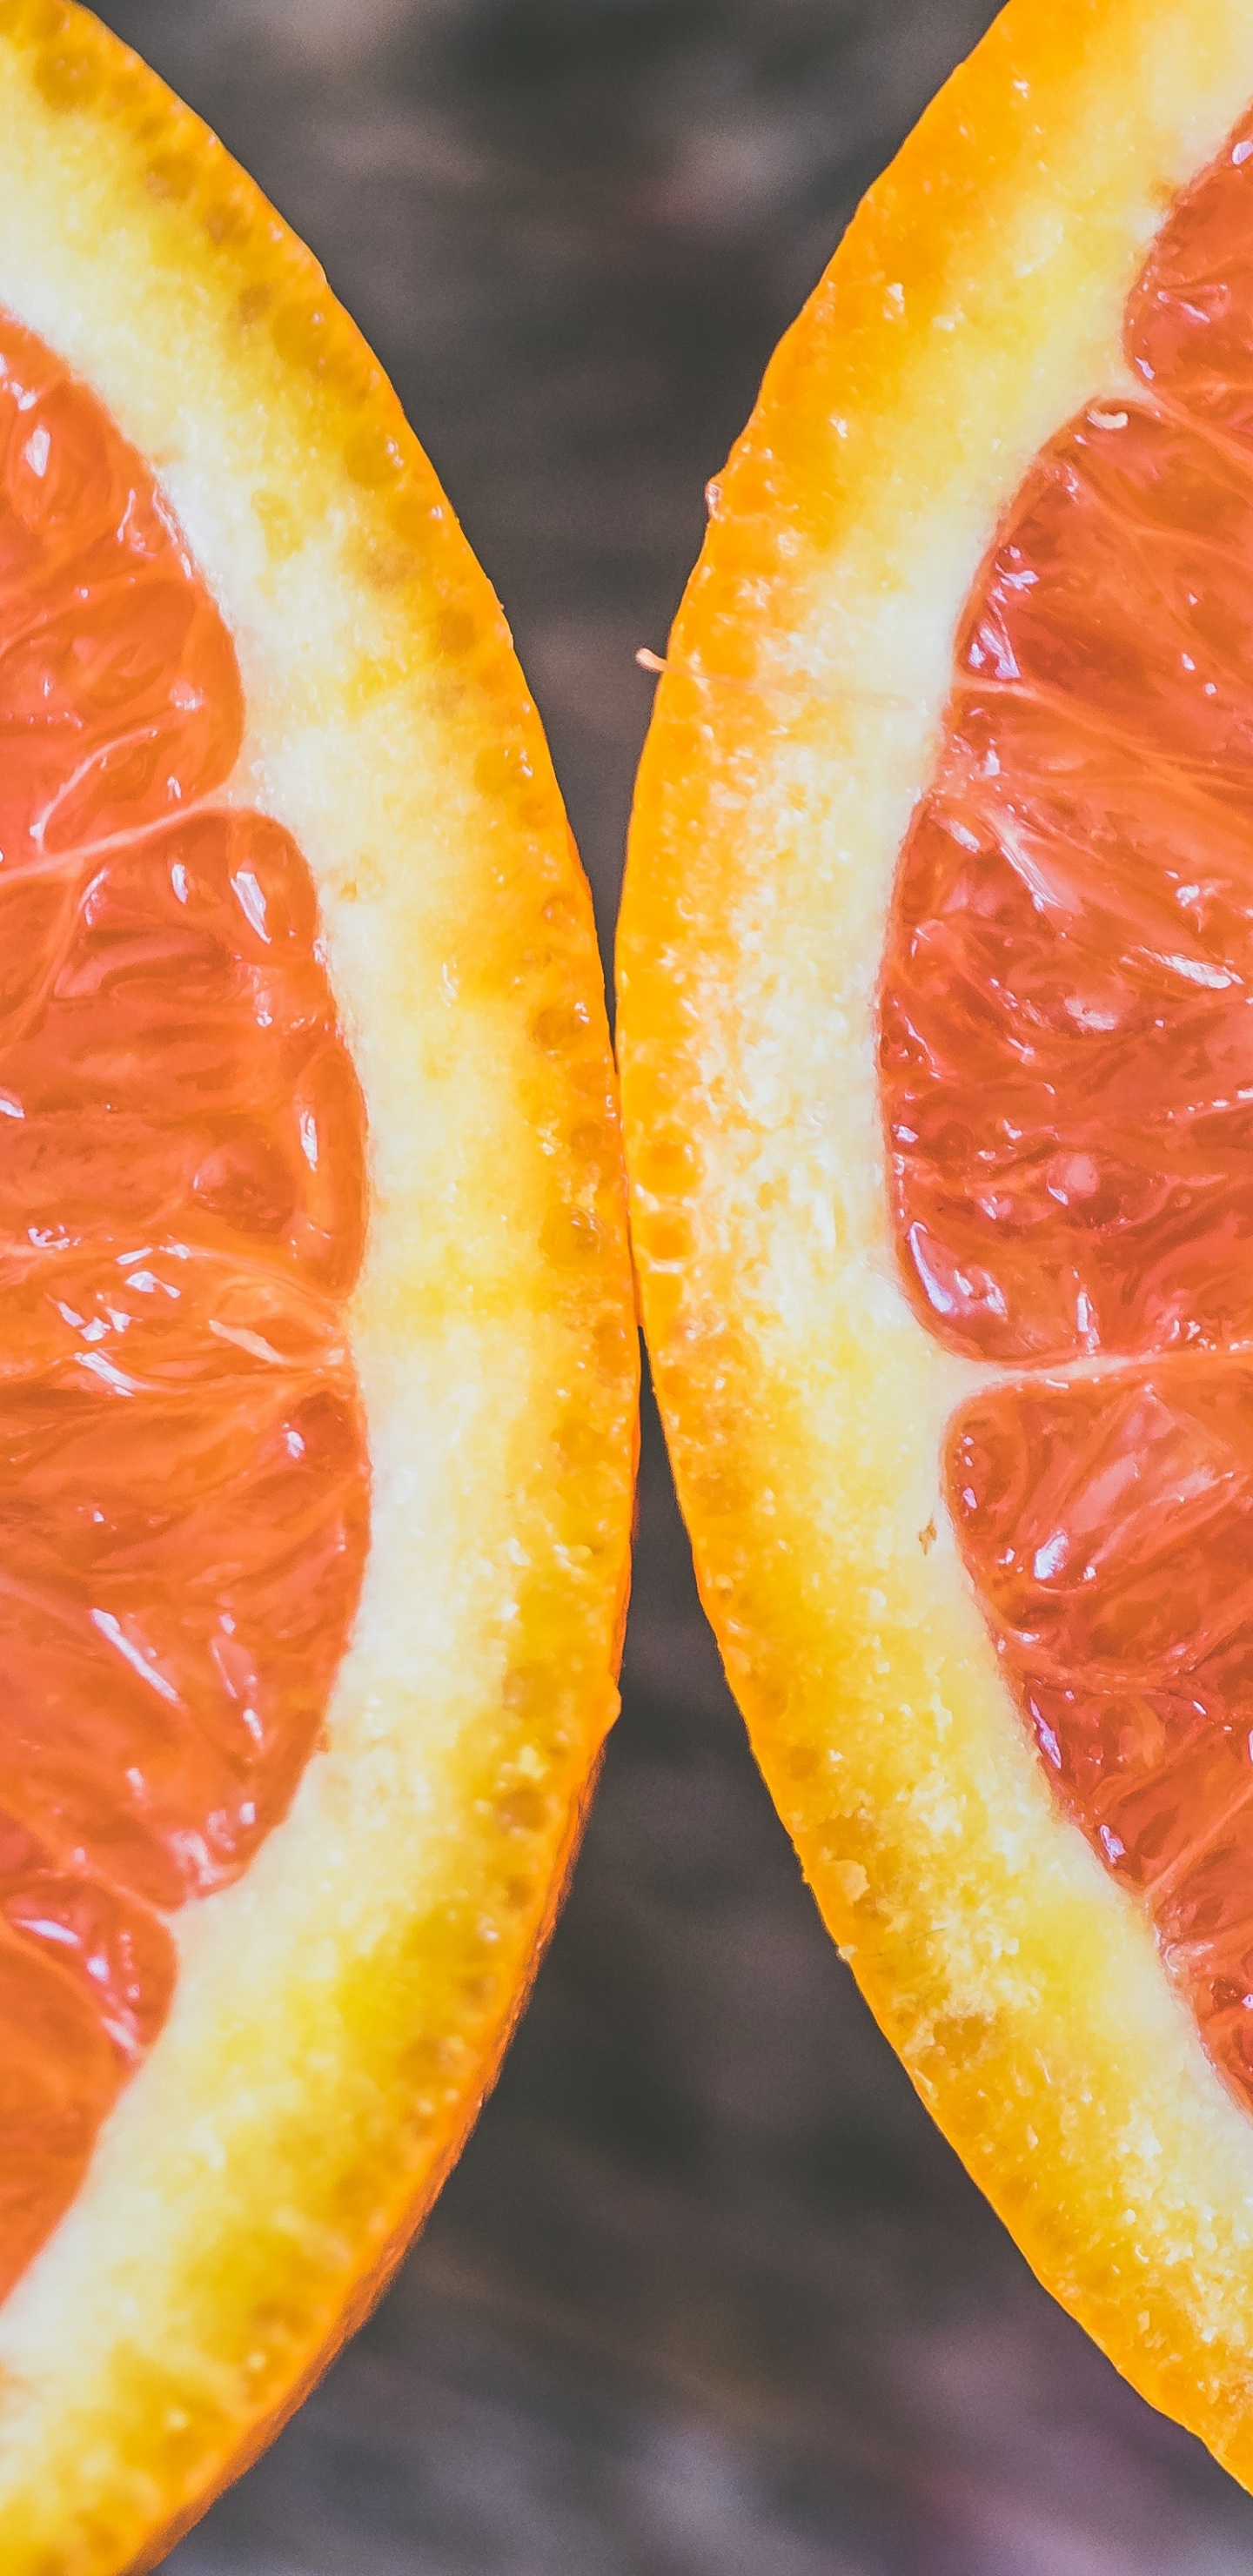 Rodajas de Naranja en Fotografía de Cerca. Wallpaper in 1440x2960 Resolution